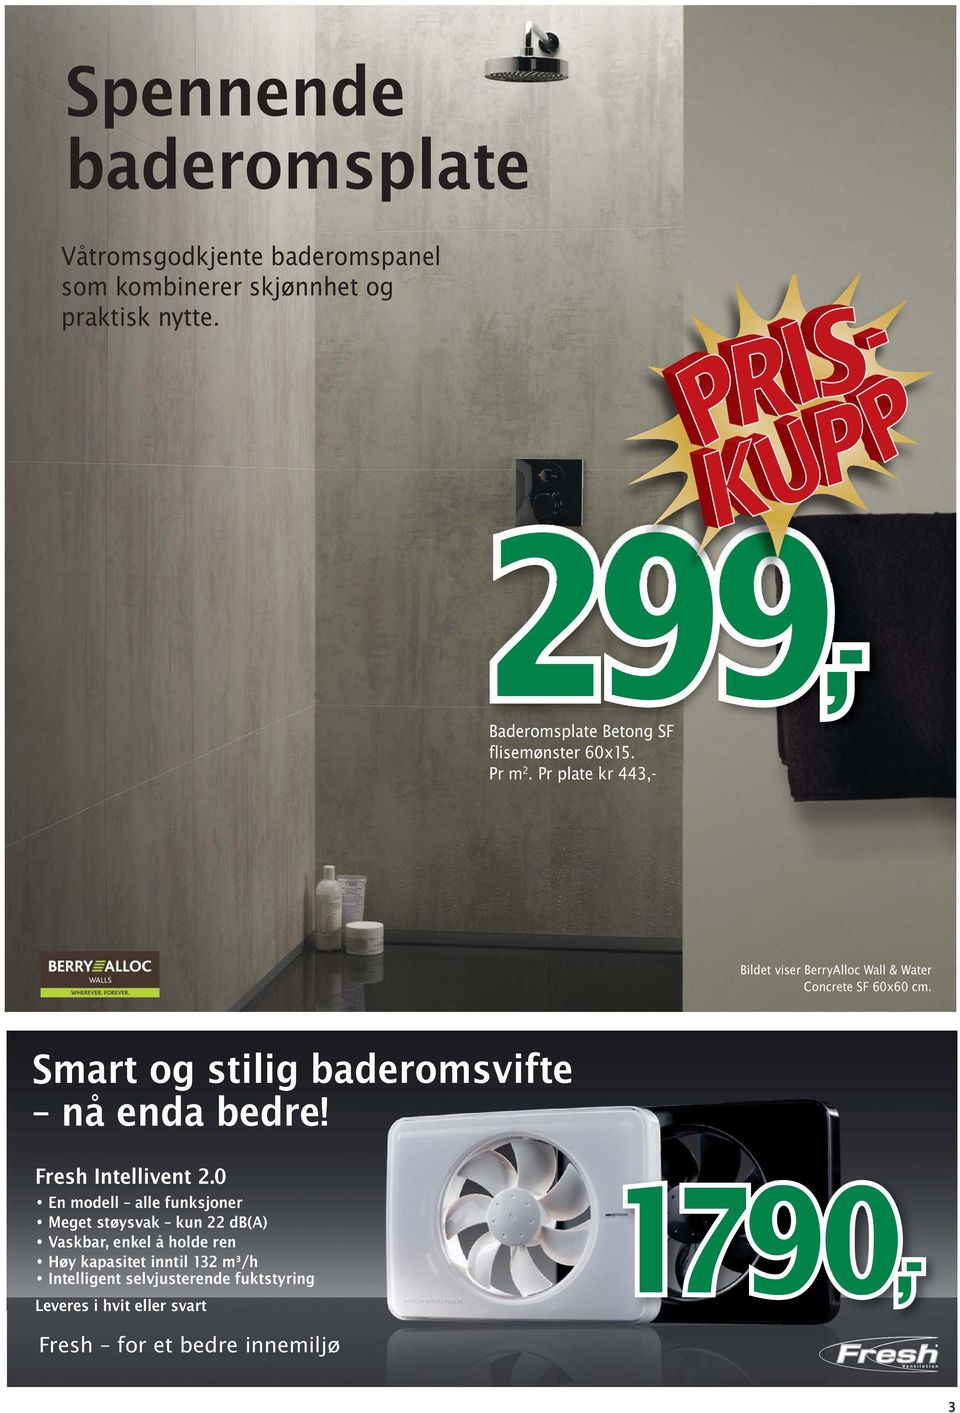 Pr plate kr 443,- Bildet viser BerryAlloc Wall & Water Concrete SF 60x60 cm. Smart og stilig baderomsvifte nå enda bedre!